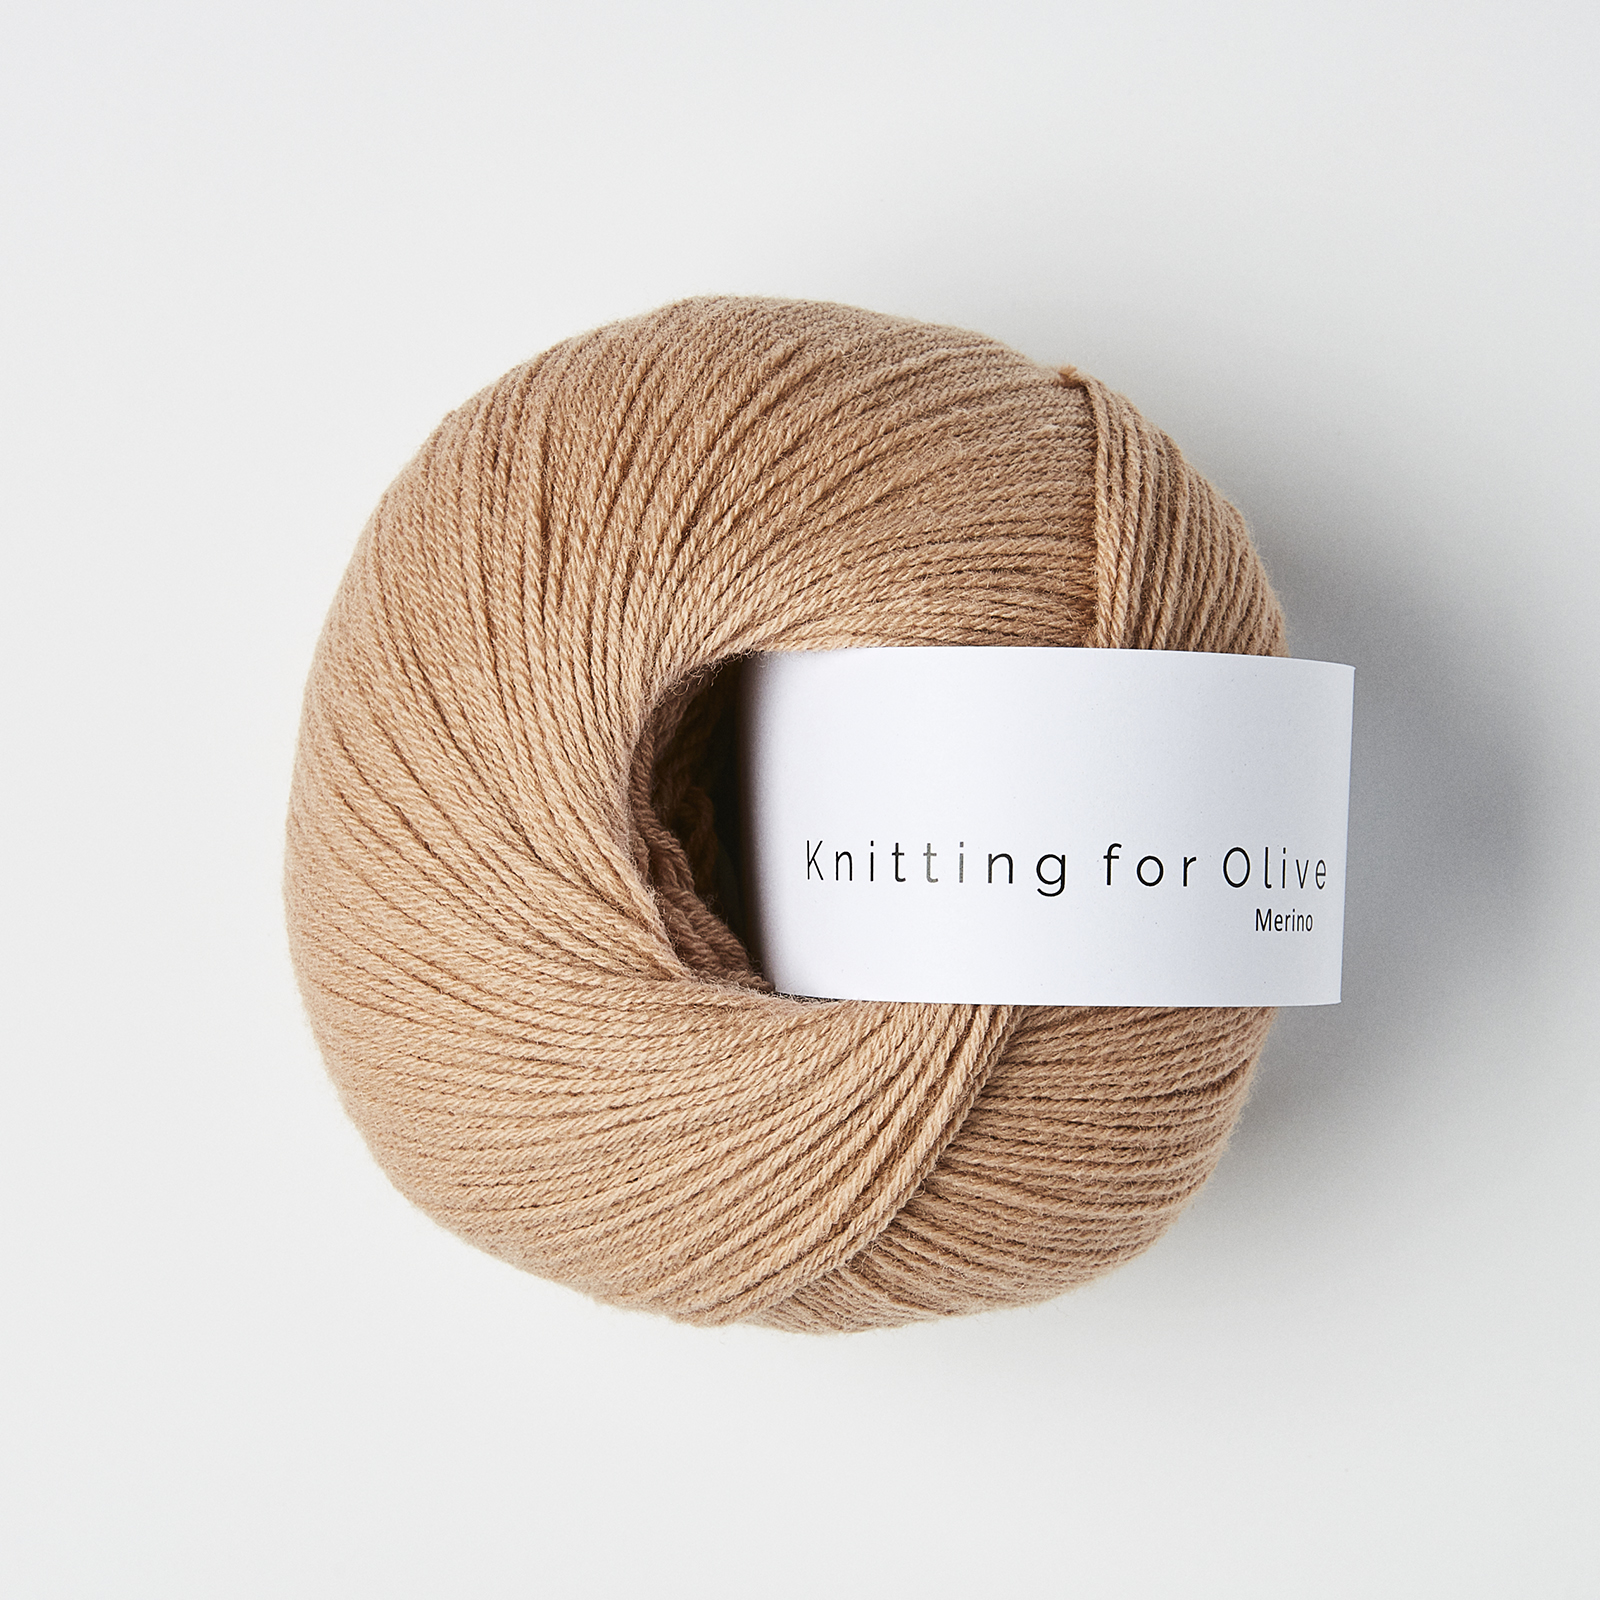 Merino (Knitting for Olive): camel rose